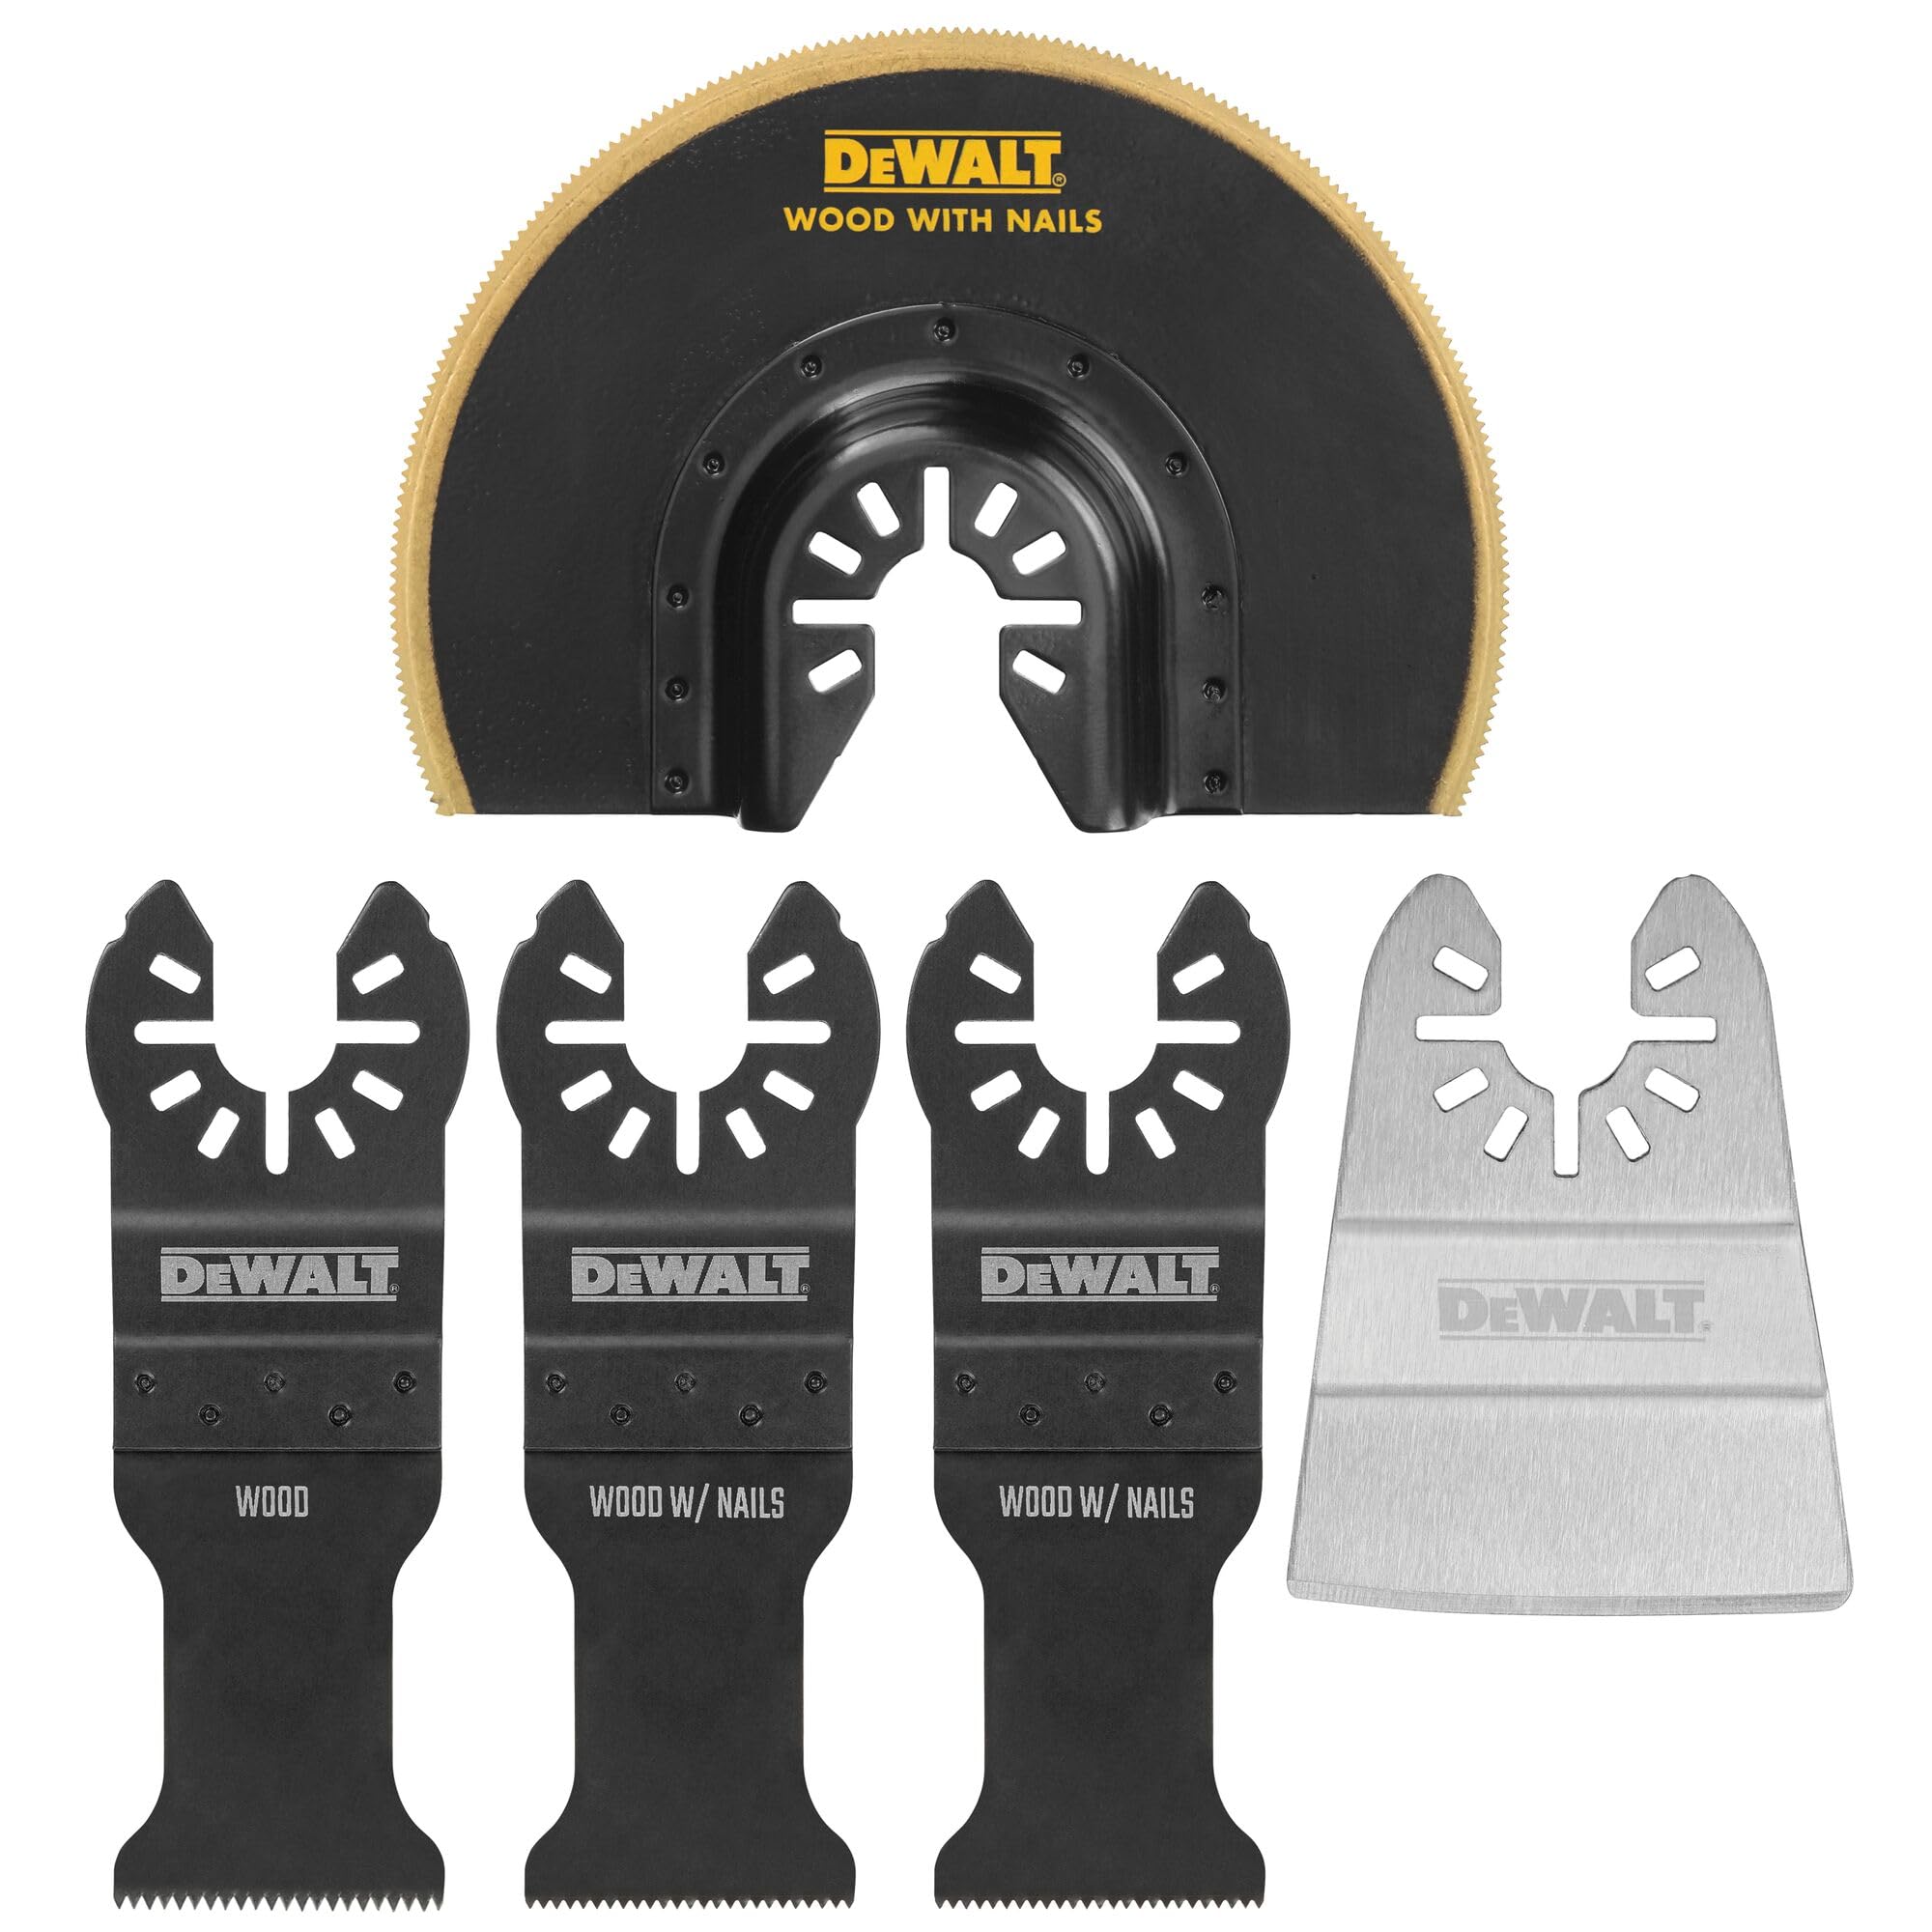 DEWALT Oscillating Tool Blades Kit, 5-Piece (DWA4216) $19.99